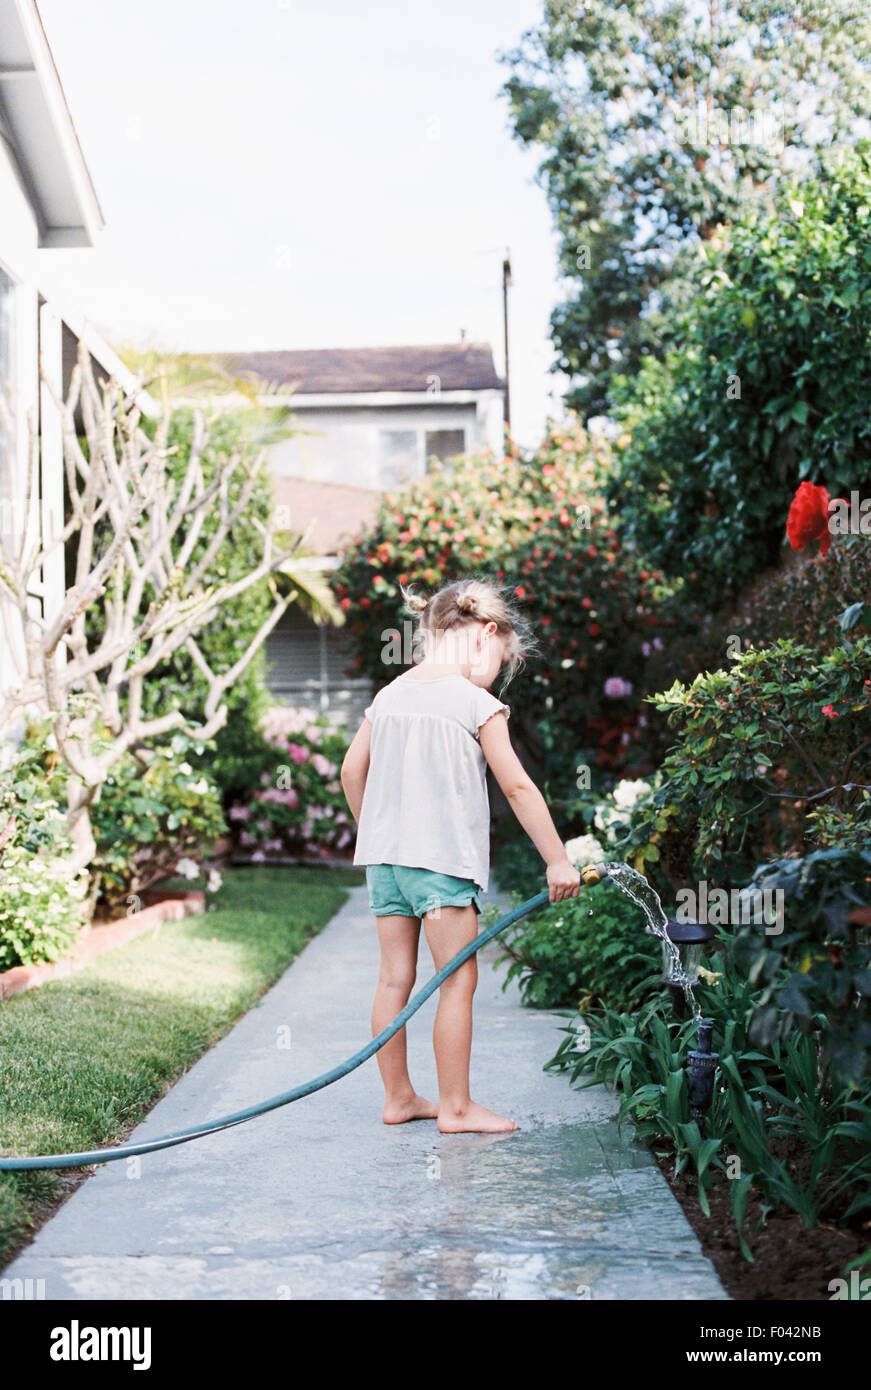 Junges Mädchen auf einen Pfad in einem Garten stehen, spielen mit einem Wasserschlauch. Stockfoto